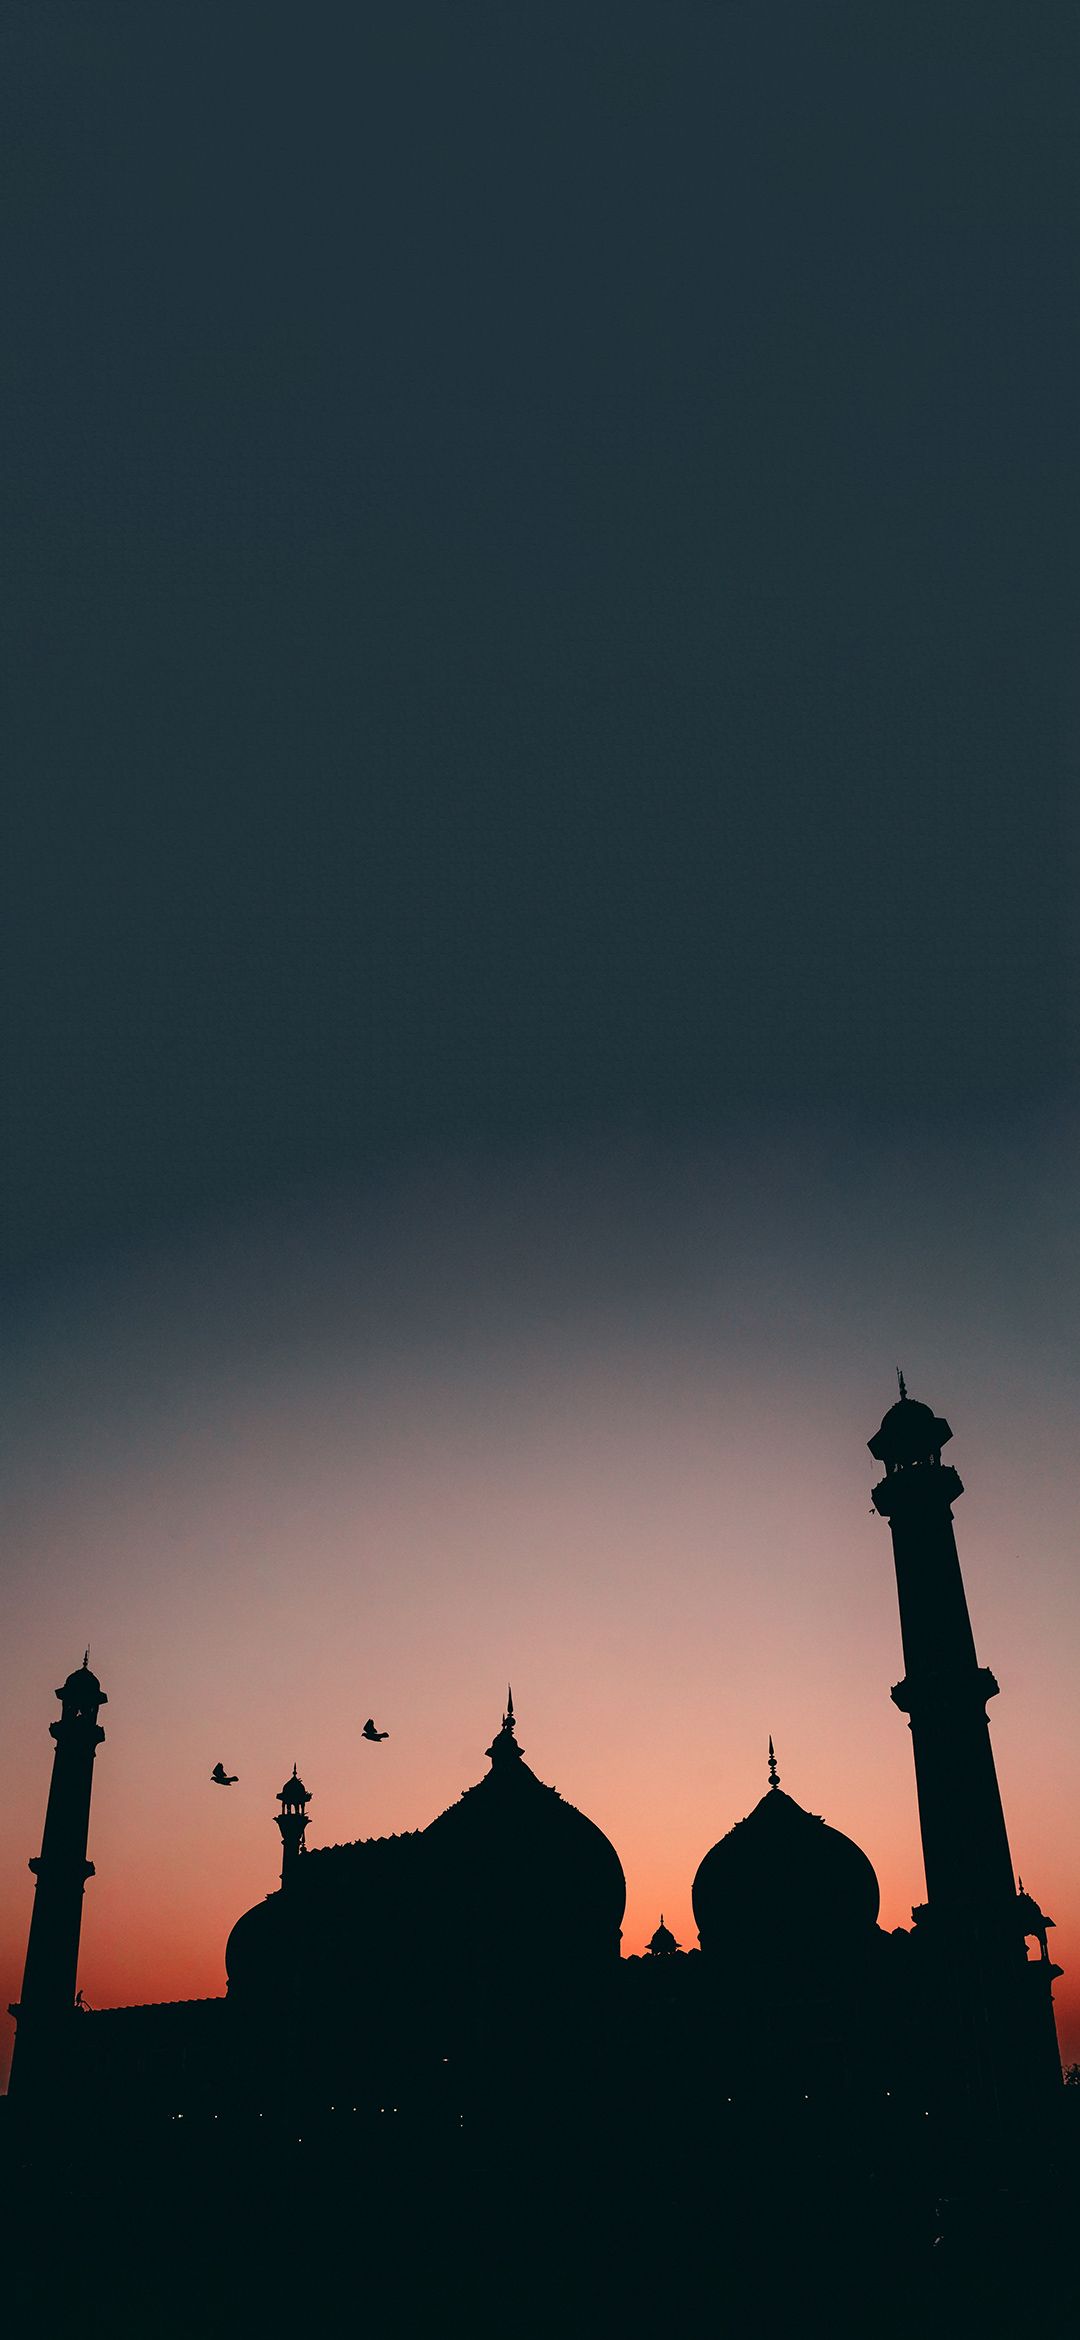 عکس فوق العاده قشنگ از مسجد اسلامی با غروبی زیبا 